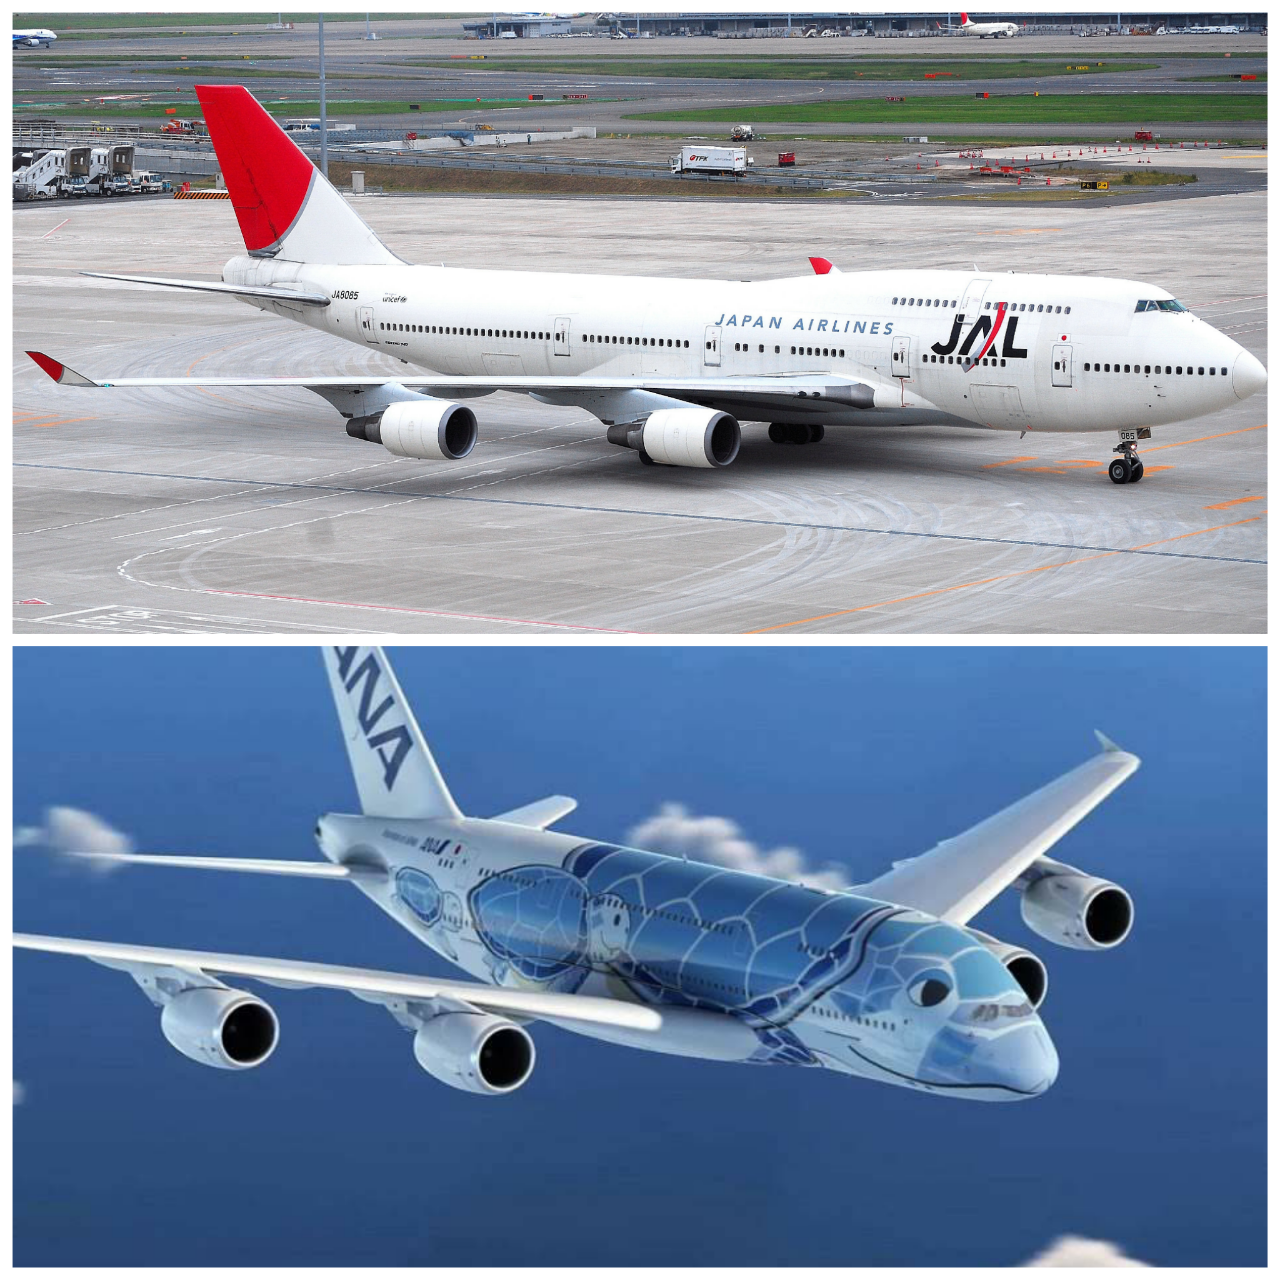 Anaのa380導入と国内旅客機のバリエーション 日常の中のファンタジーへと